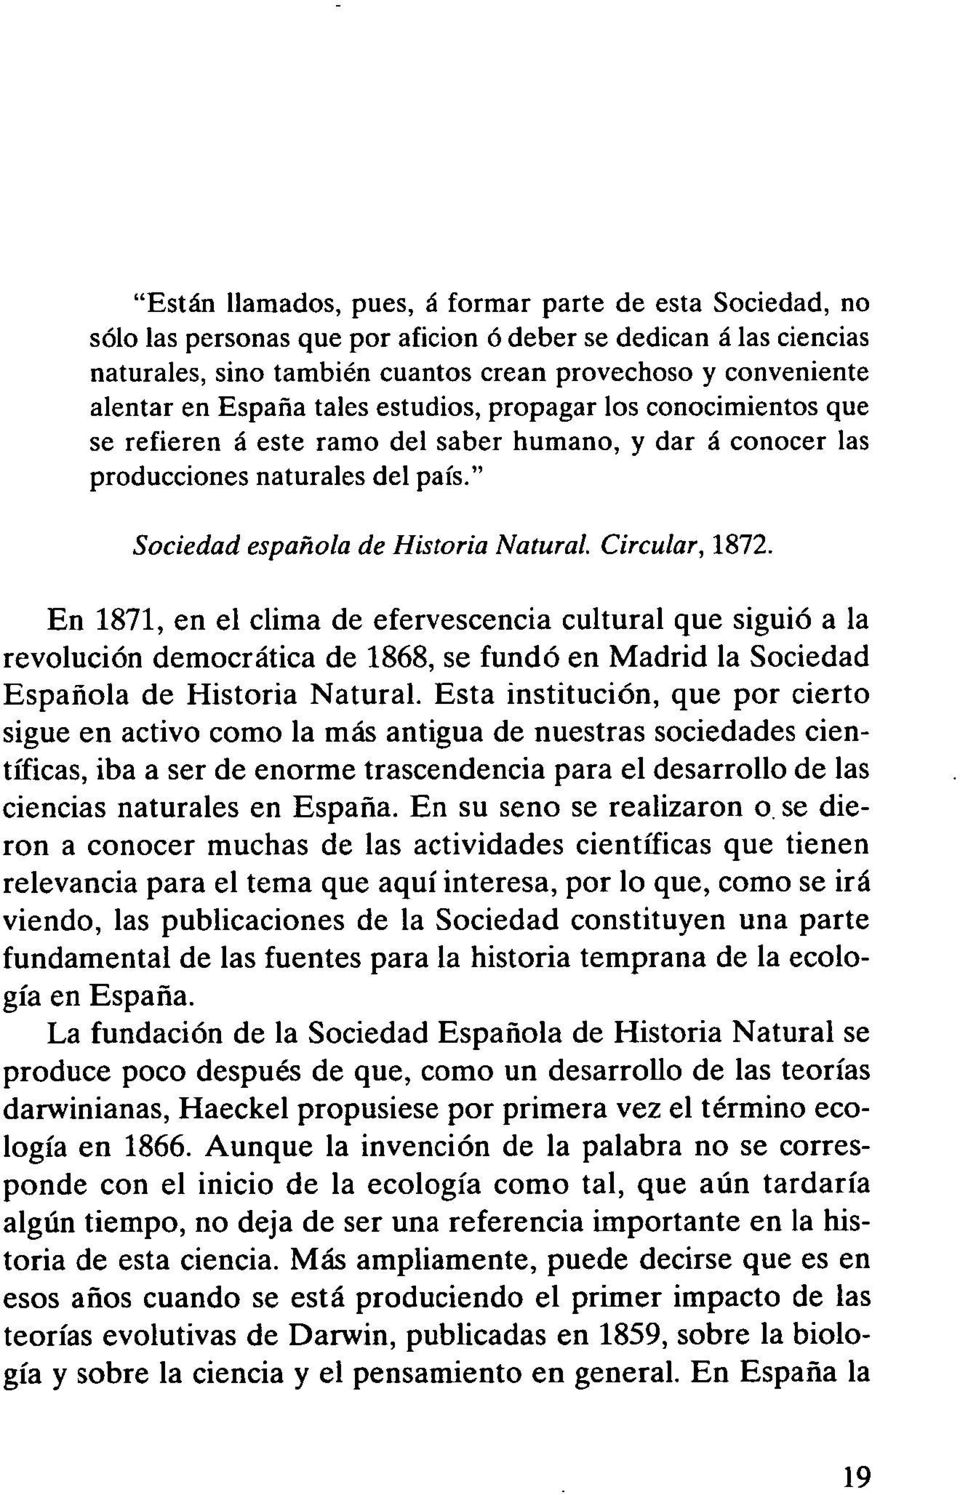 Circular, 1872. En 1871, en el clima de efervescencia cultural que siguió a la revolución democrática de 1868, se fundó en Madrid la Sociedad Española de Historia Natural.